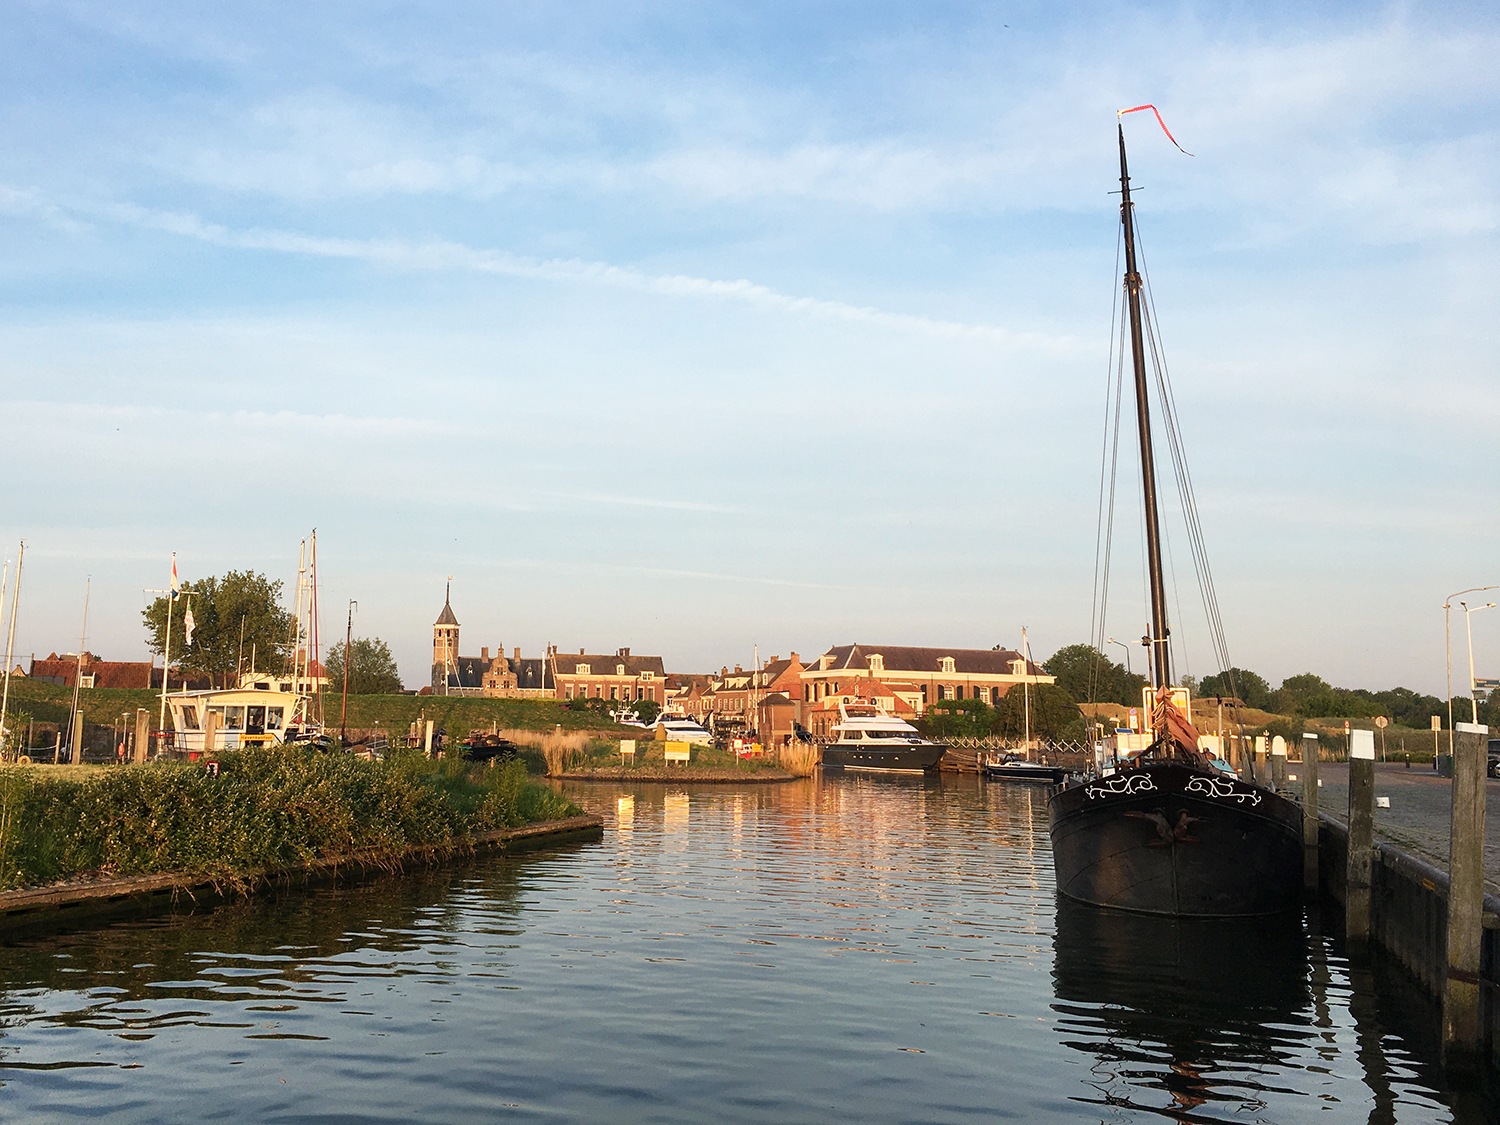 Hafeneinfahrt des Gemeentehaven Willemstad, NL, im Vordergrund ein historischer Segler